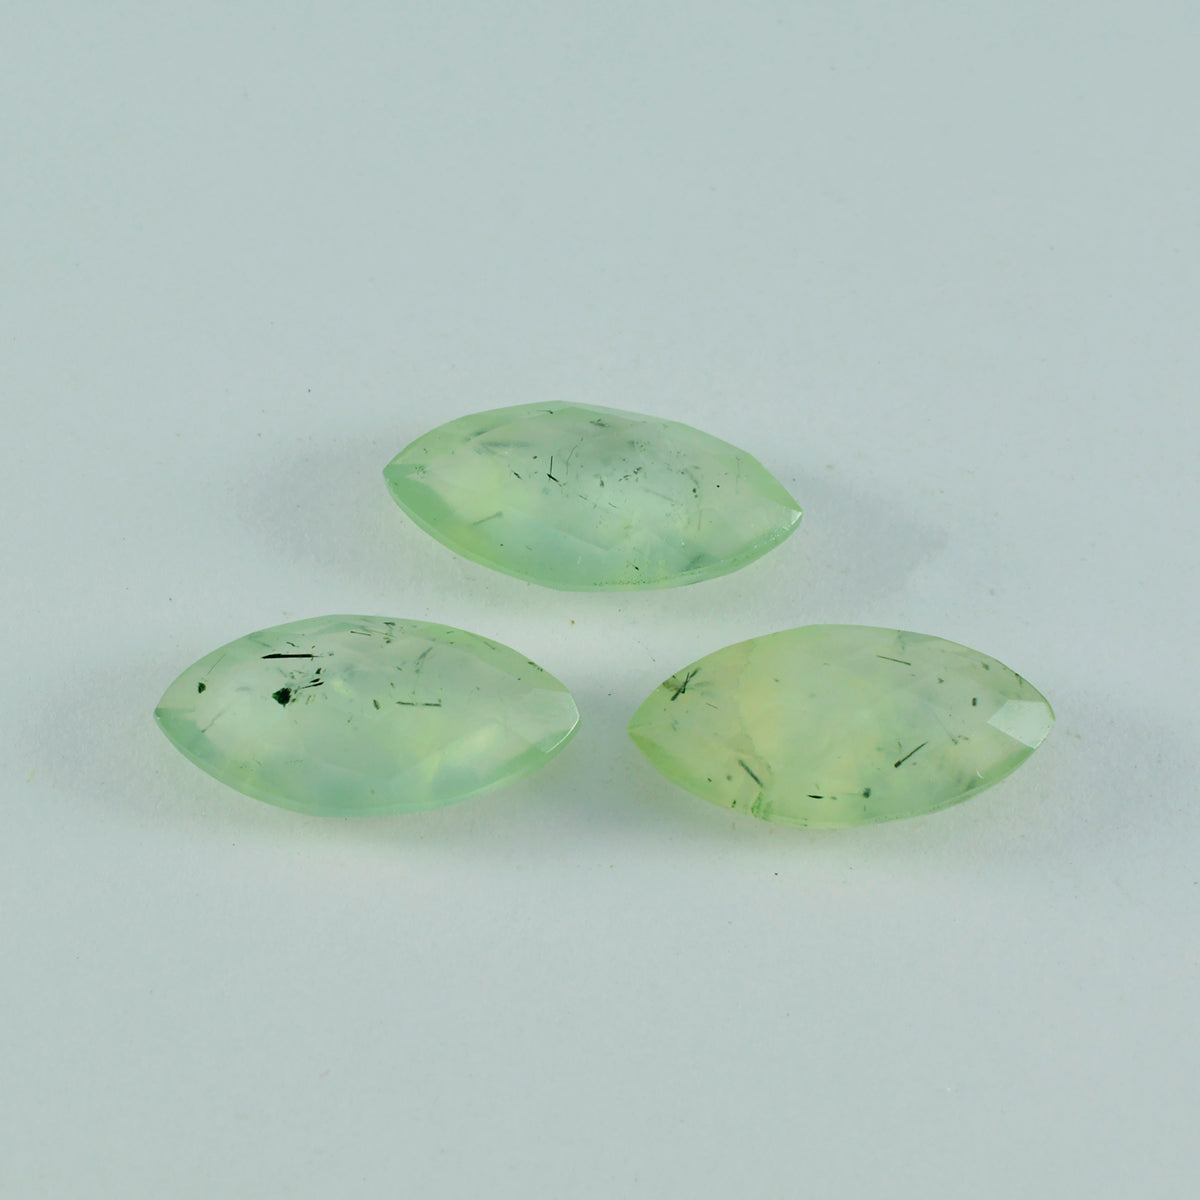 riyogems 1шт зеленый пренит ограненный 9х18 мм драгоценный камень хорошего качества в форме маркиза